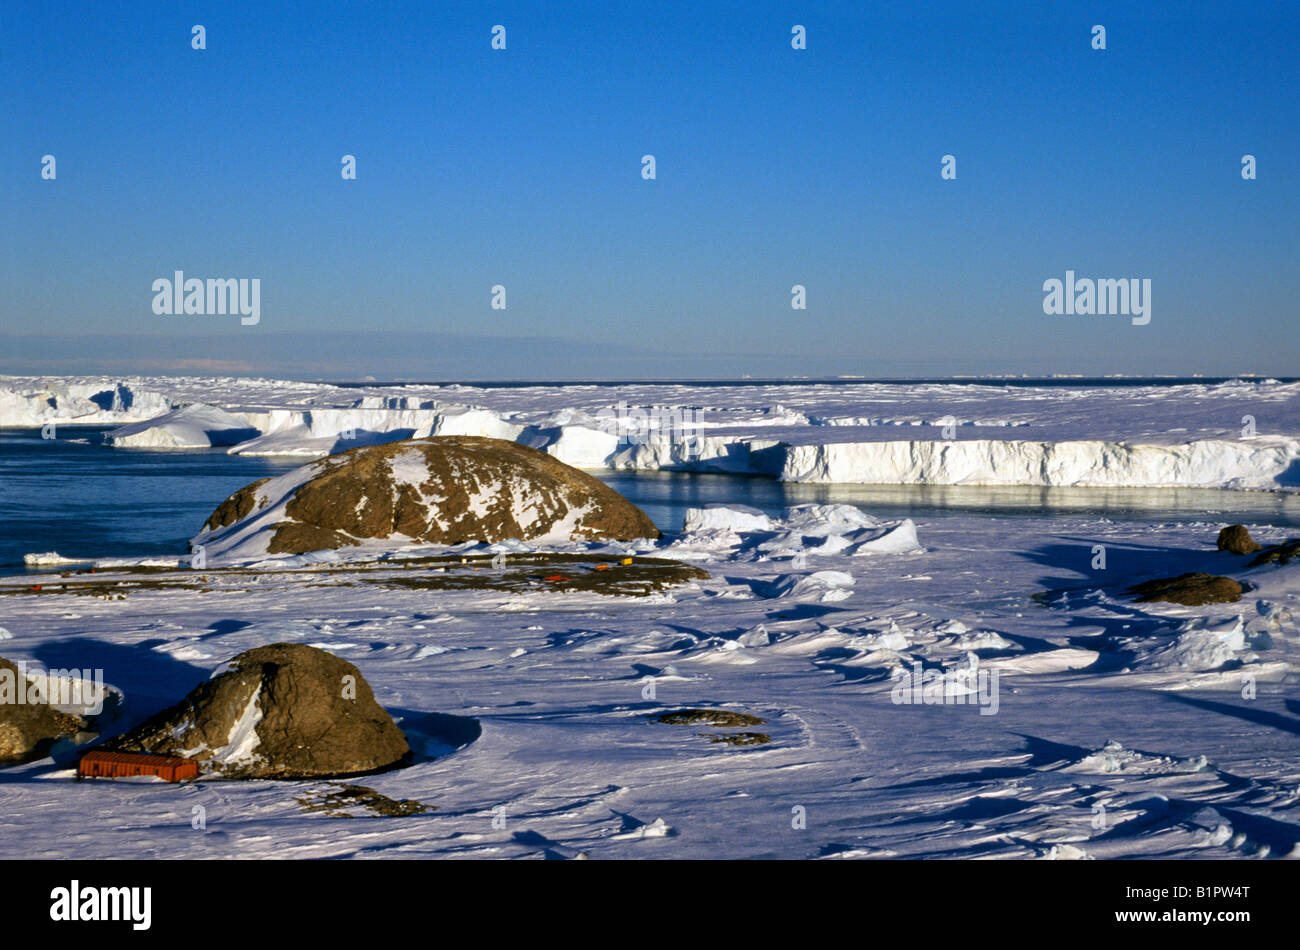 Base Dumont d'Urville en Antarctique Astronomie Ambiance Ambiance Ambiance atmosphères coq cold ocean océans froids de la mer froide Col Banque D'Images